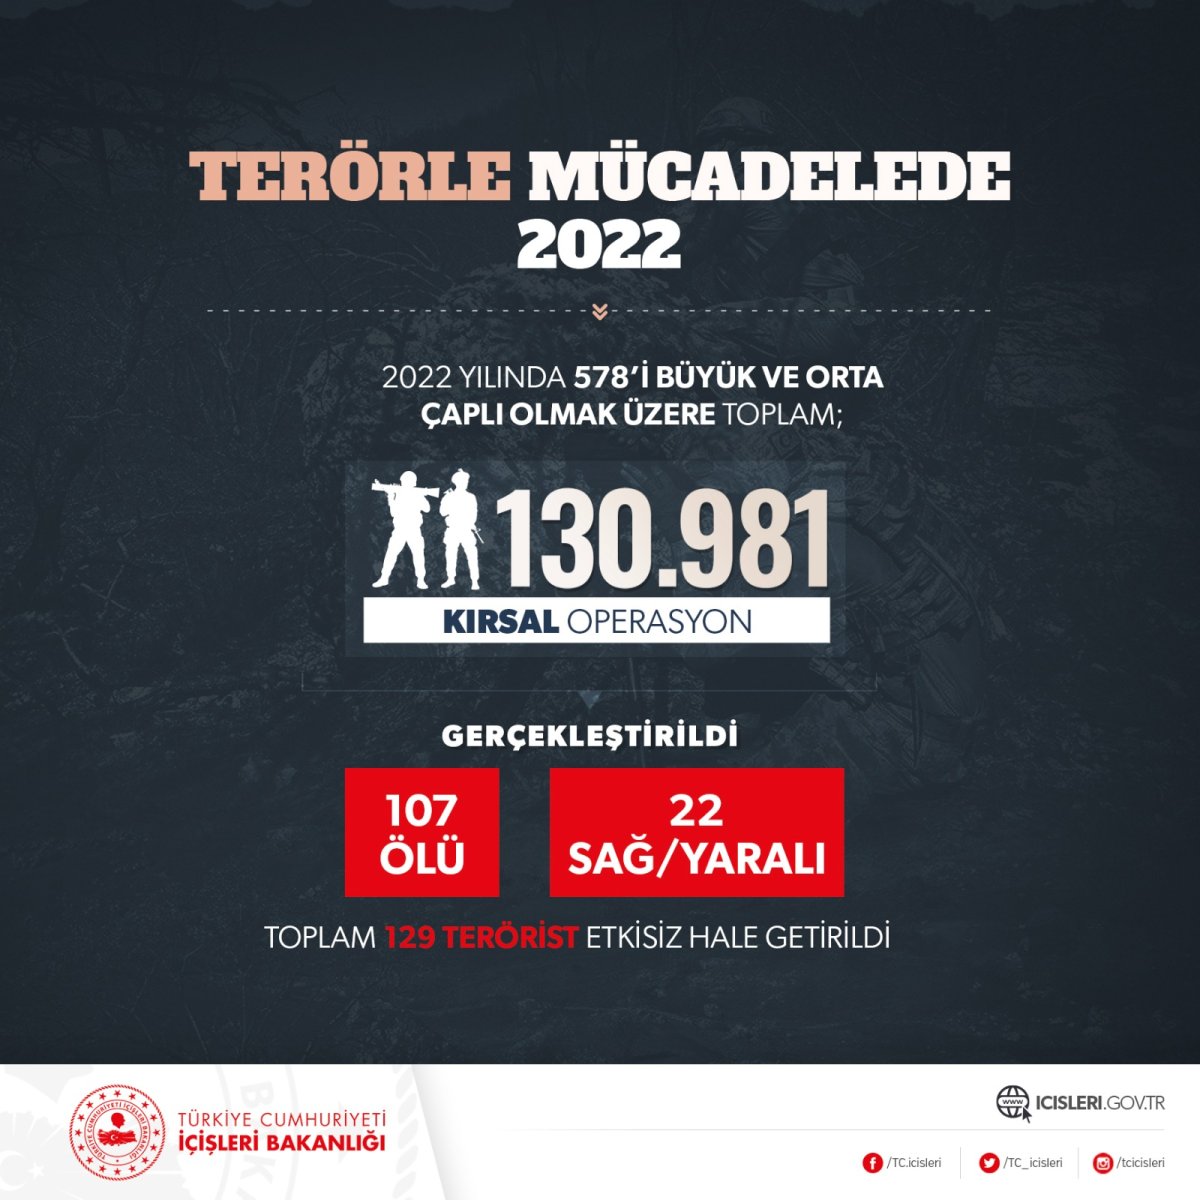 Yurt içi terörle mücadelede 2022 raporu #1